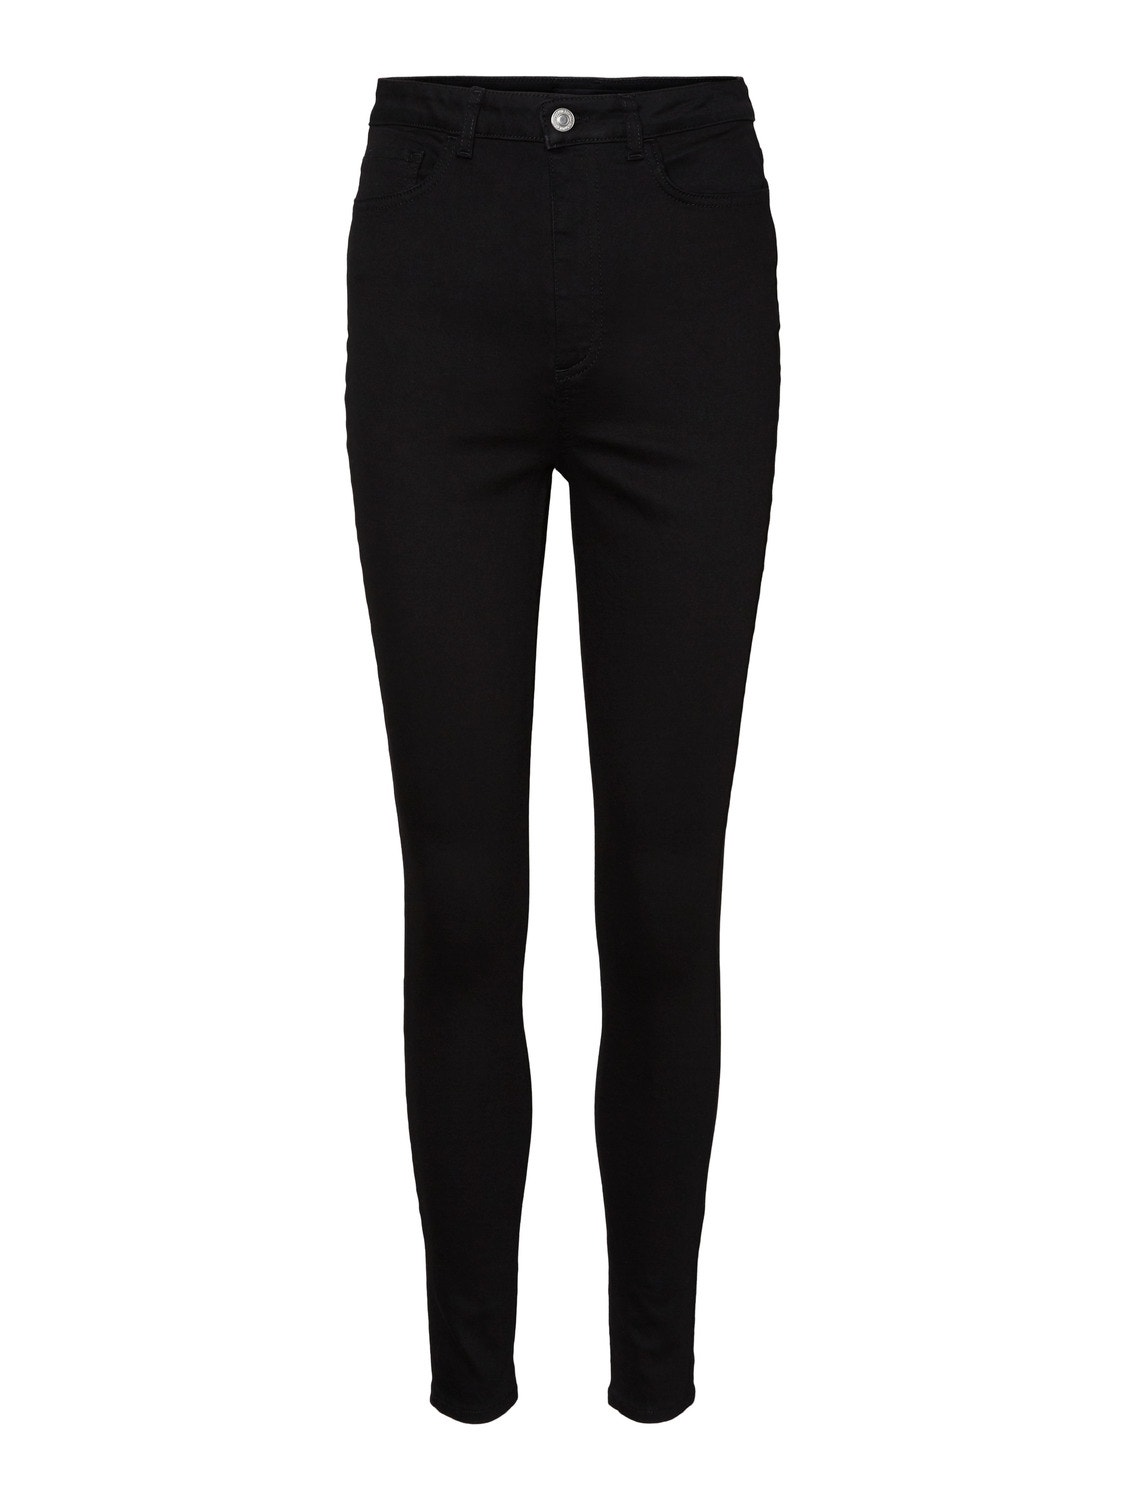 Vero Moda VMSANDRA Vita molto alta Skinny Fit Jeans -Black - 10227355